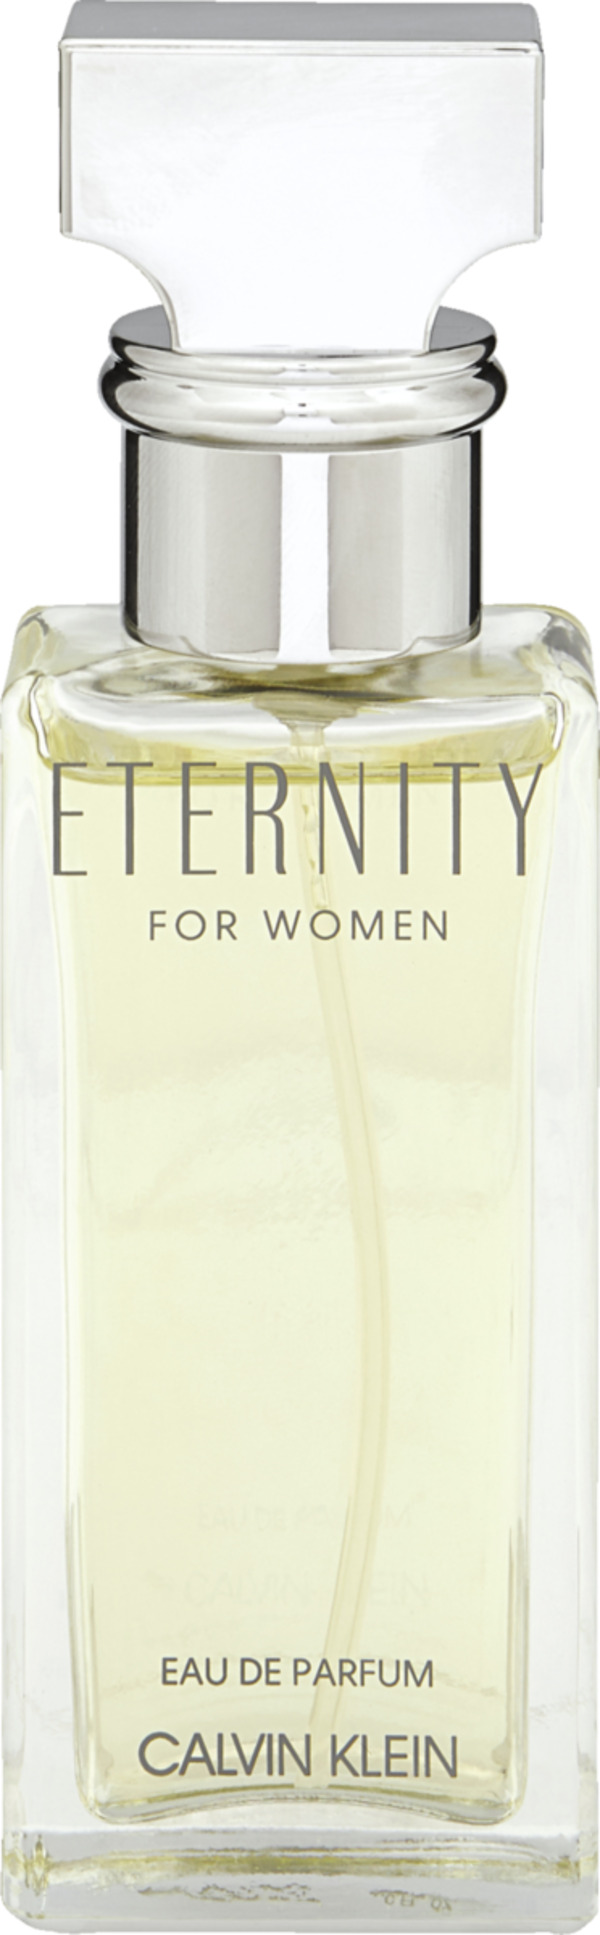 Bild 1 von Calvin Klein Eternity for Women, EdP 30 ml